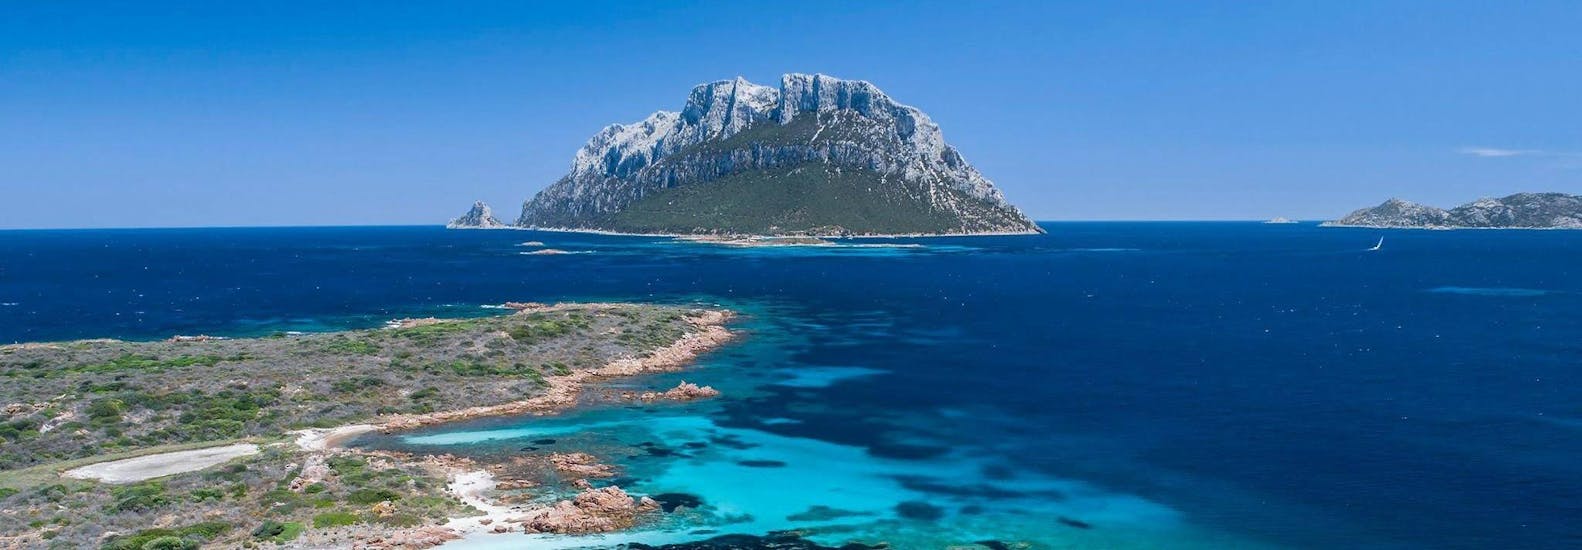 L'isola di Tavolara vista dalla barca durante la gita con BlueSea Charter & Tour Olbia.